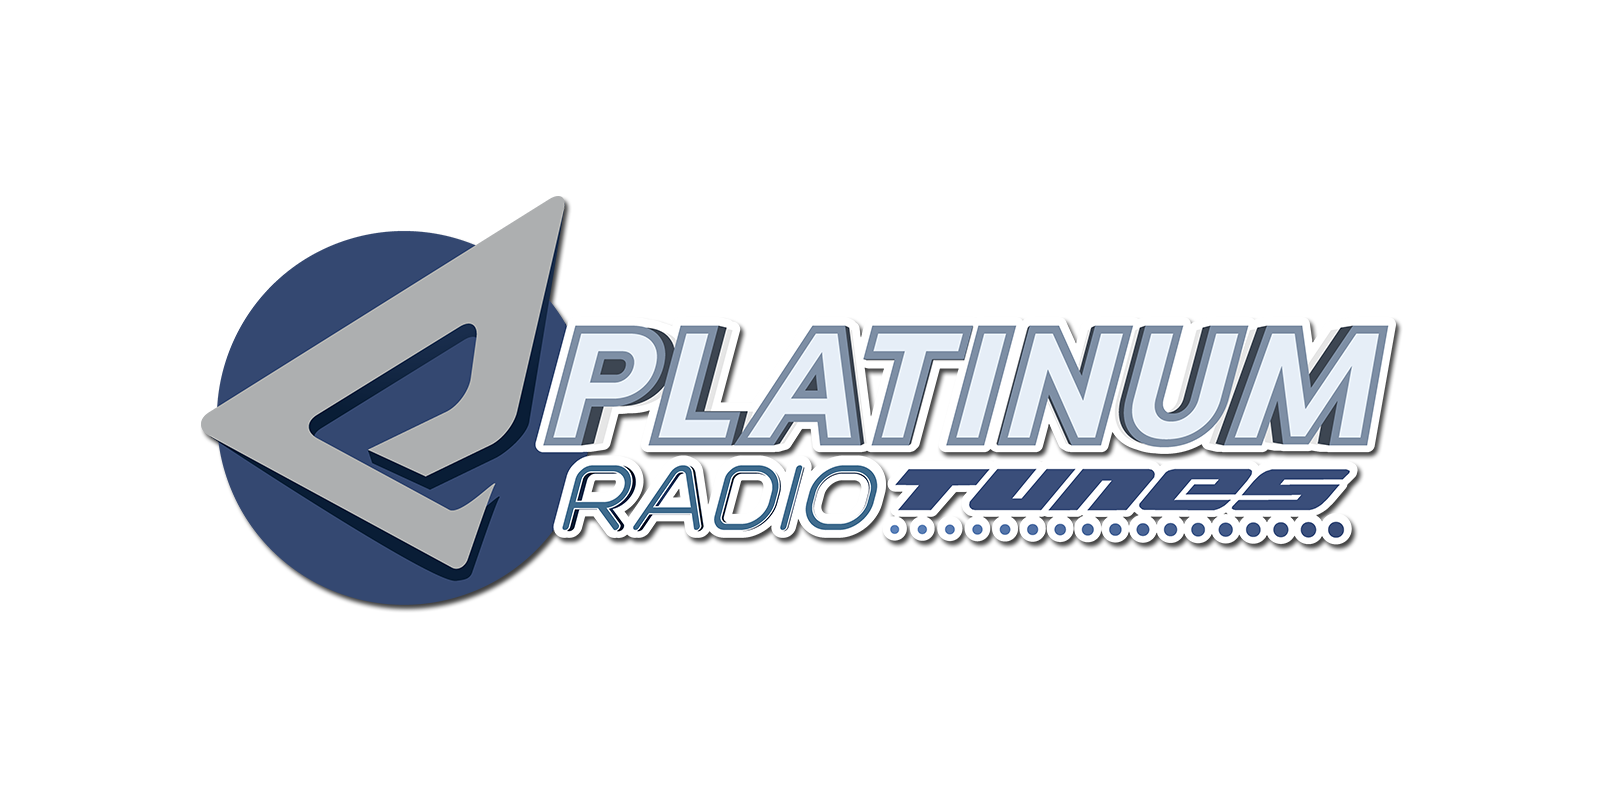 PLATINUM radiotunes logo 2